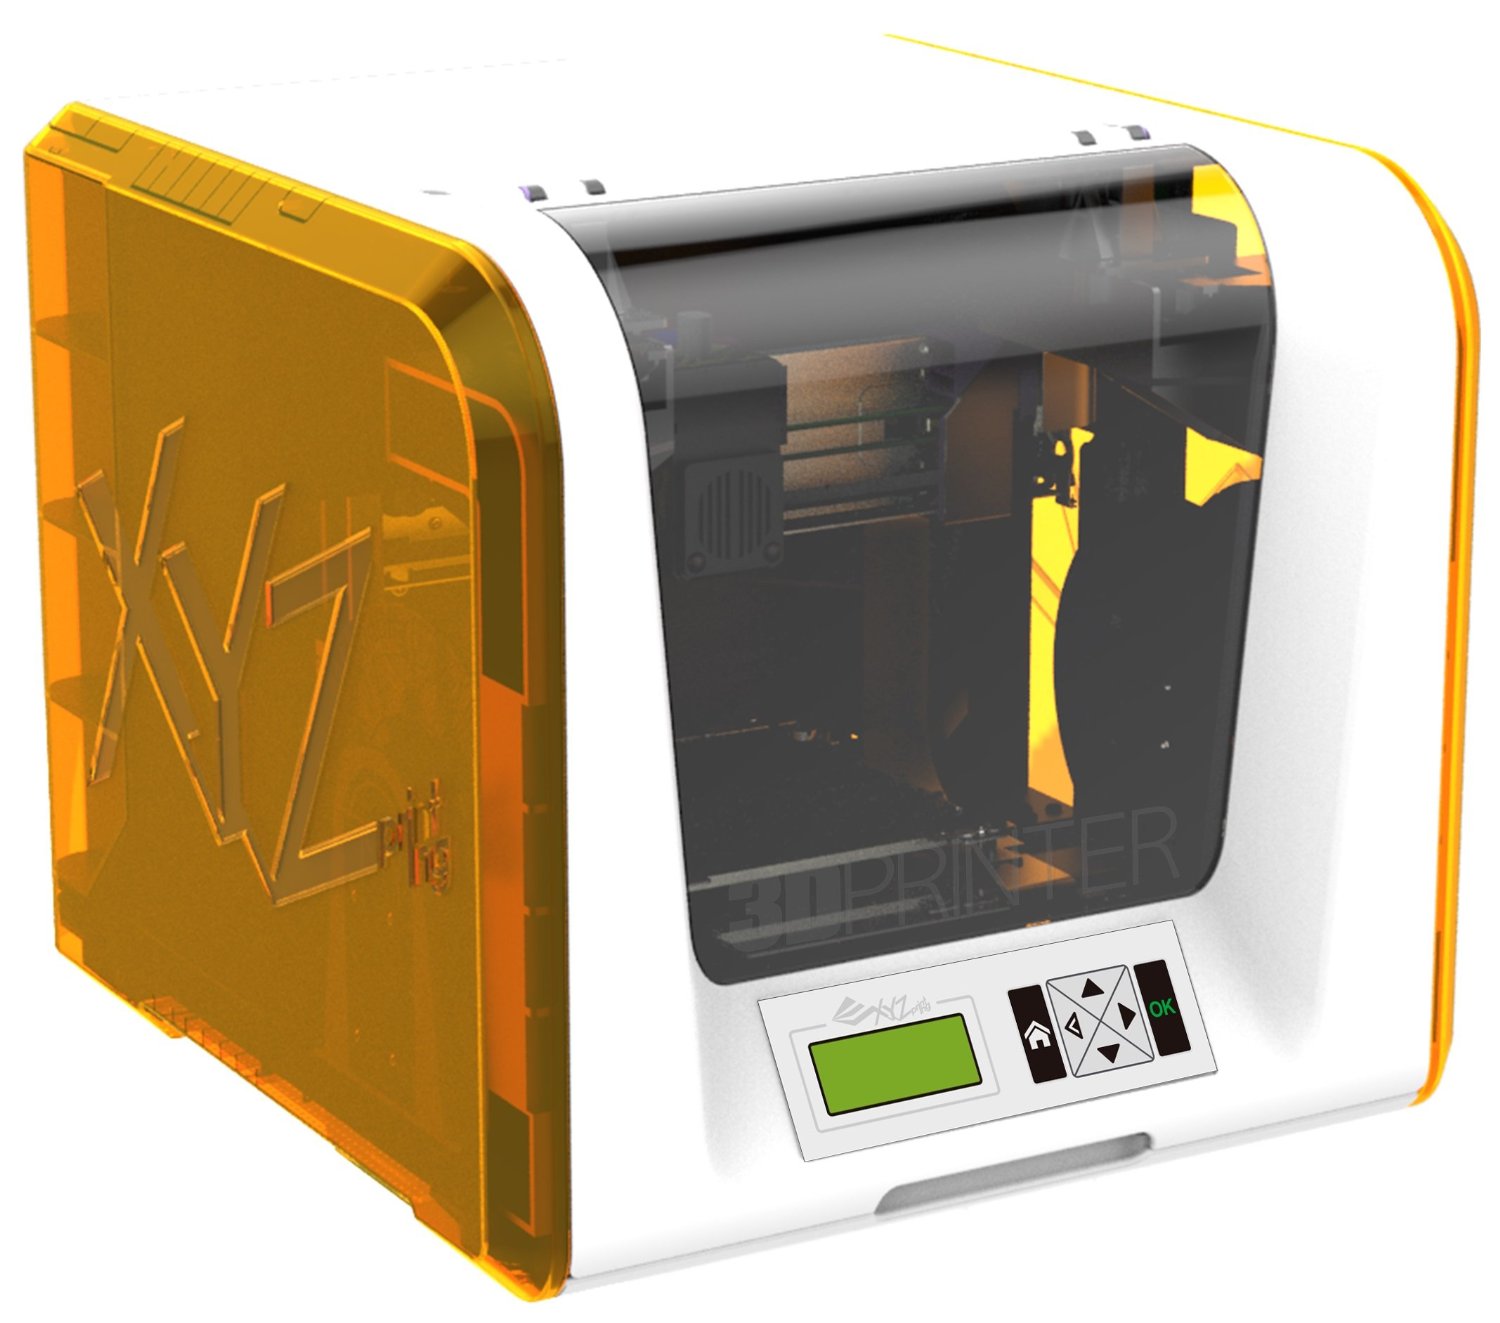 da Vinci Jr. 3D printer